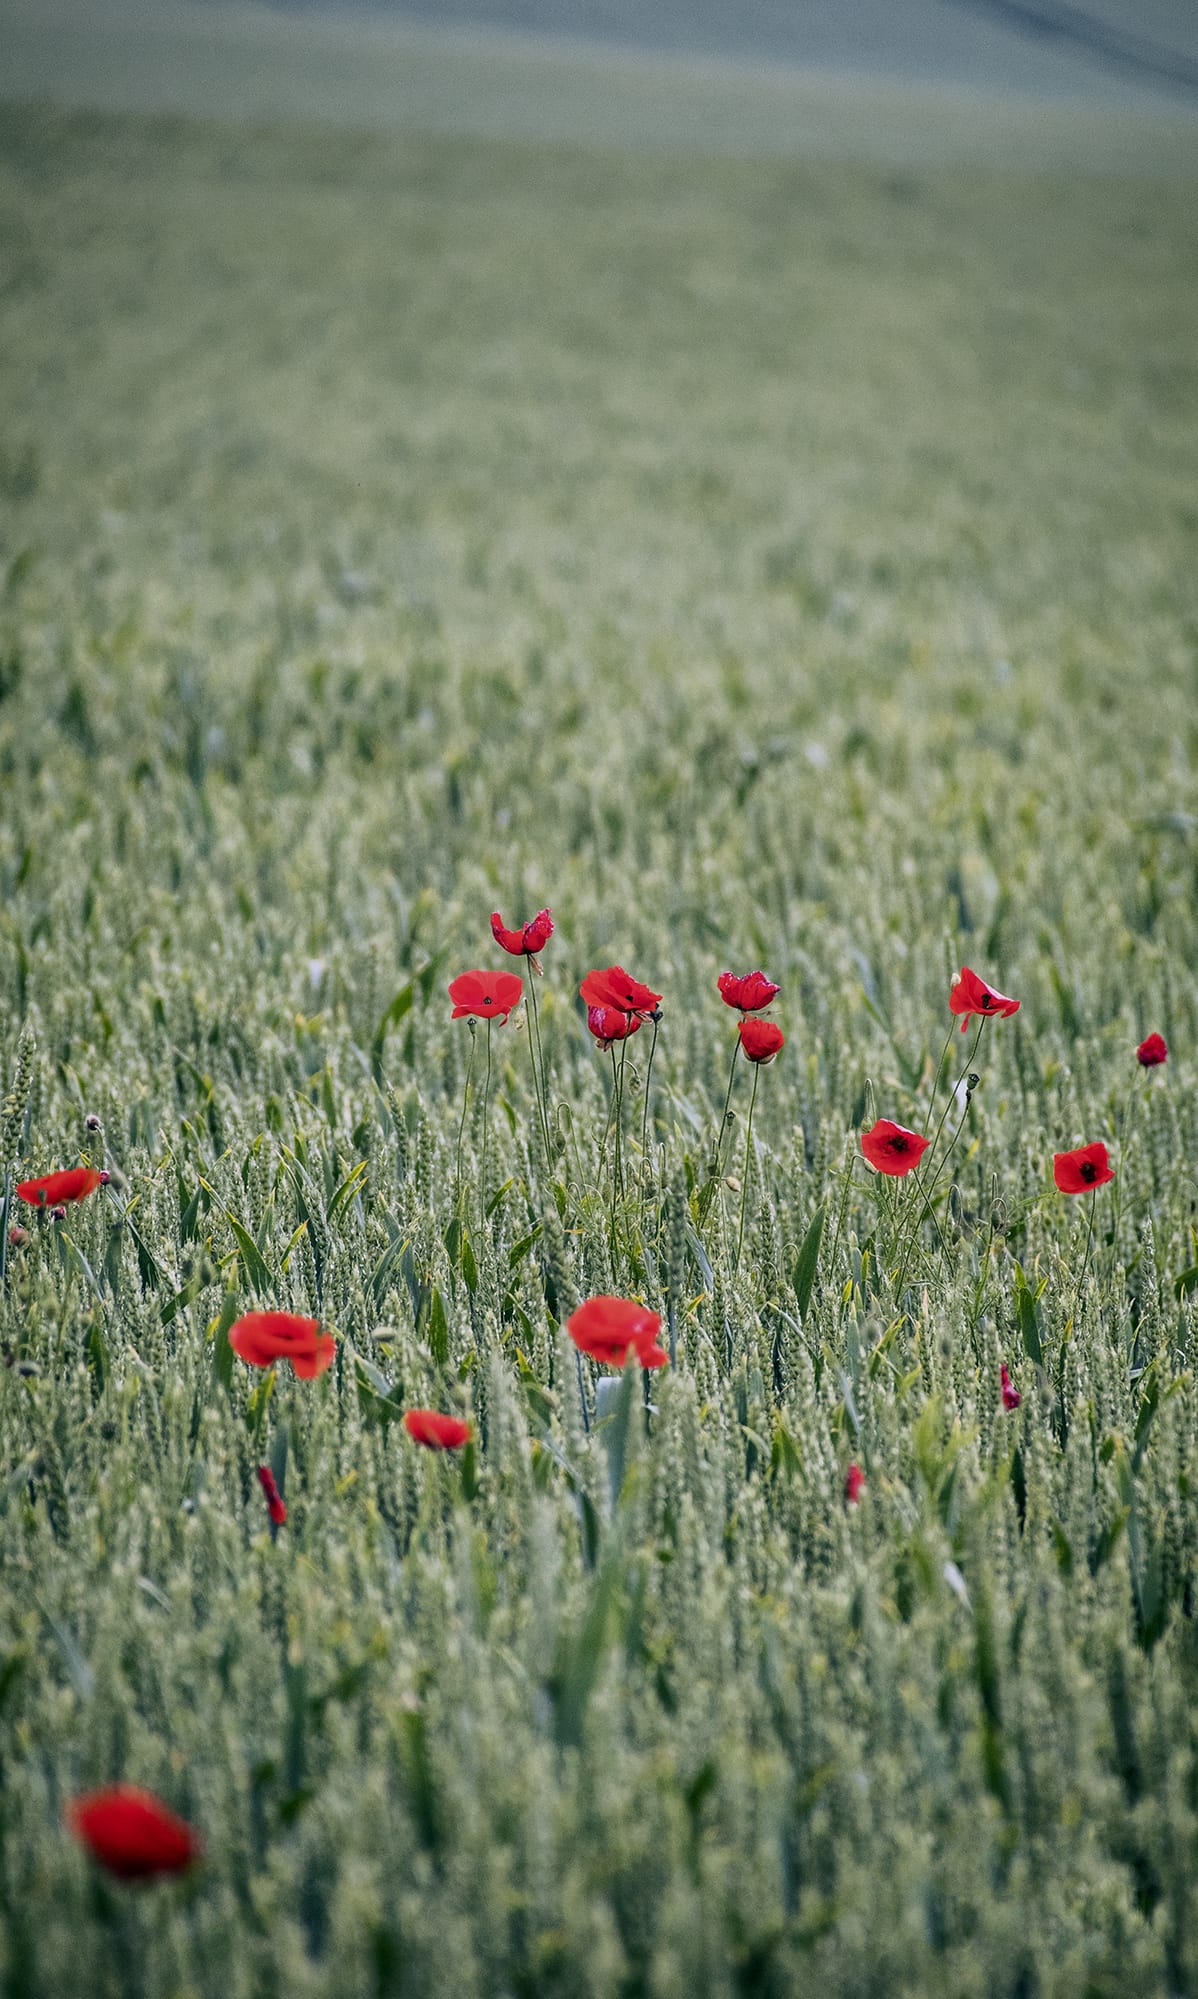 Hoa anh túc thuốc phiện màu đỏ sẫm trên cánh đồng lúa mì xanh